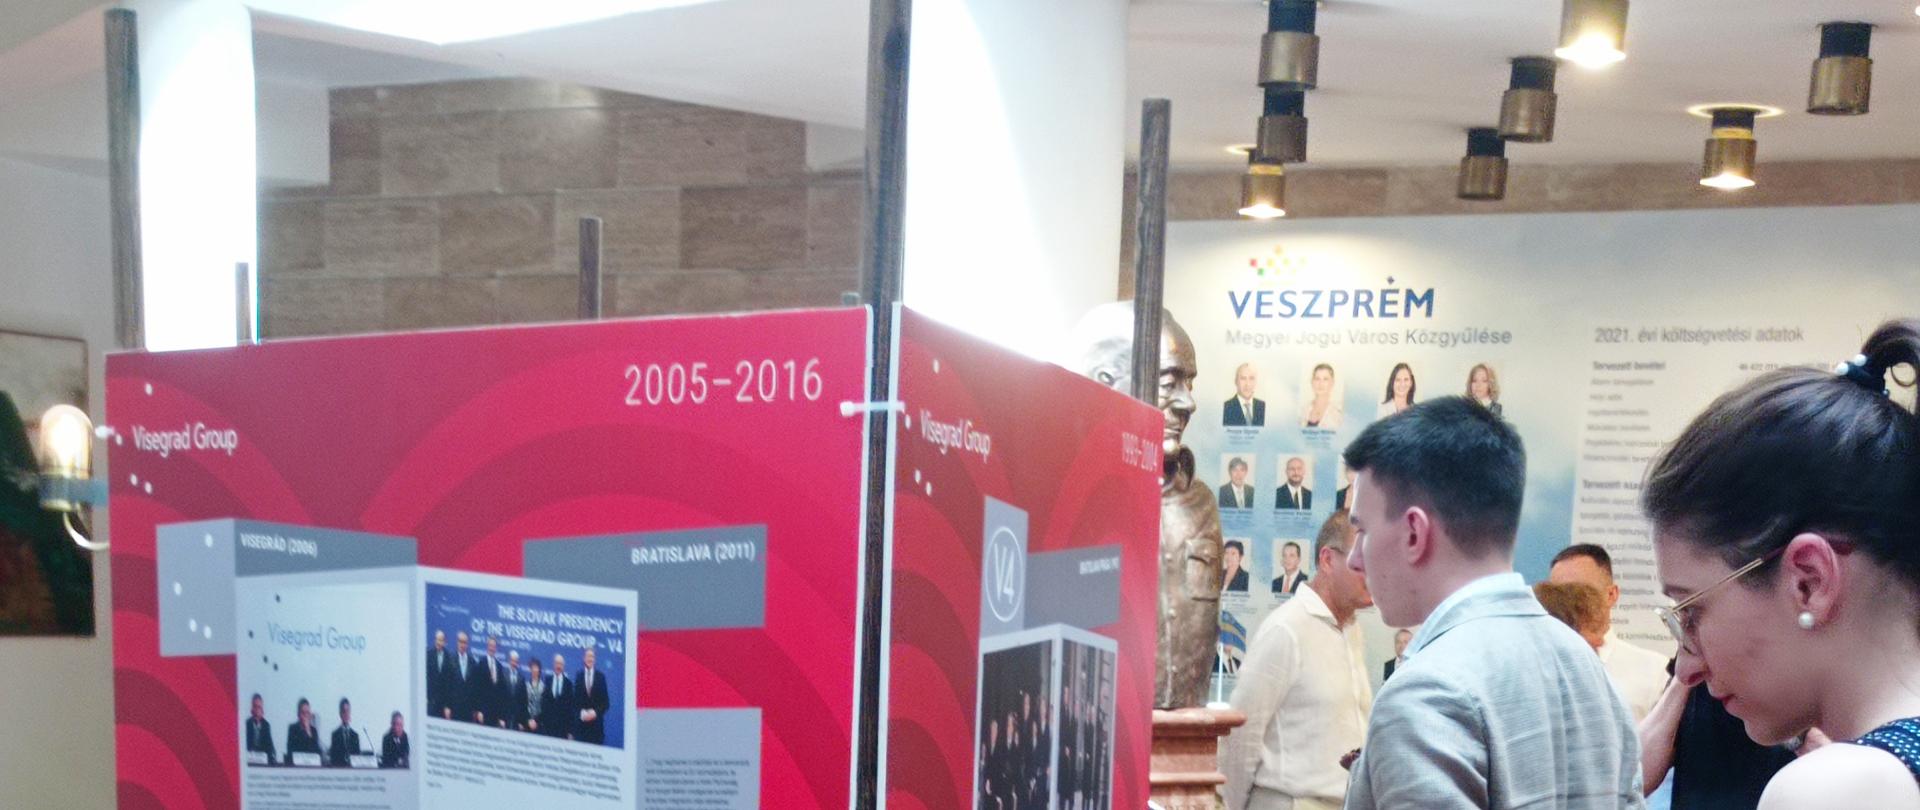 Otwarcie wystawy "30 lat Współpracy Wyszehradzkiej" w Veszprém